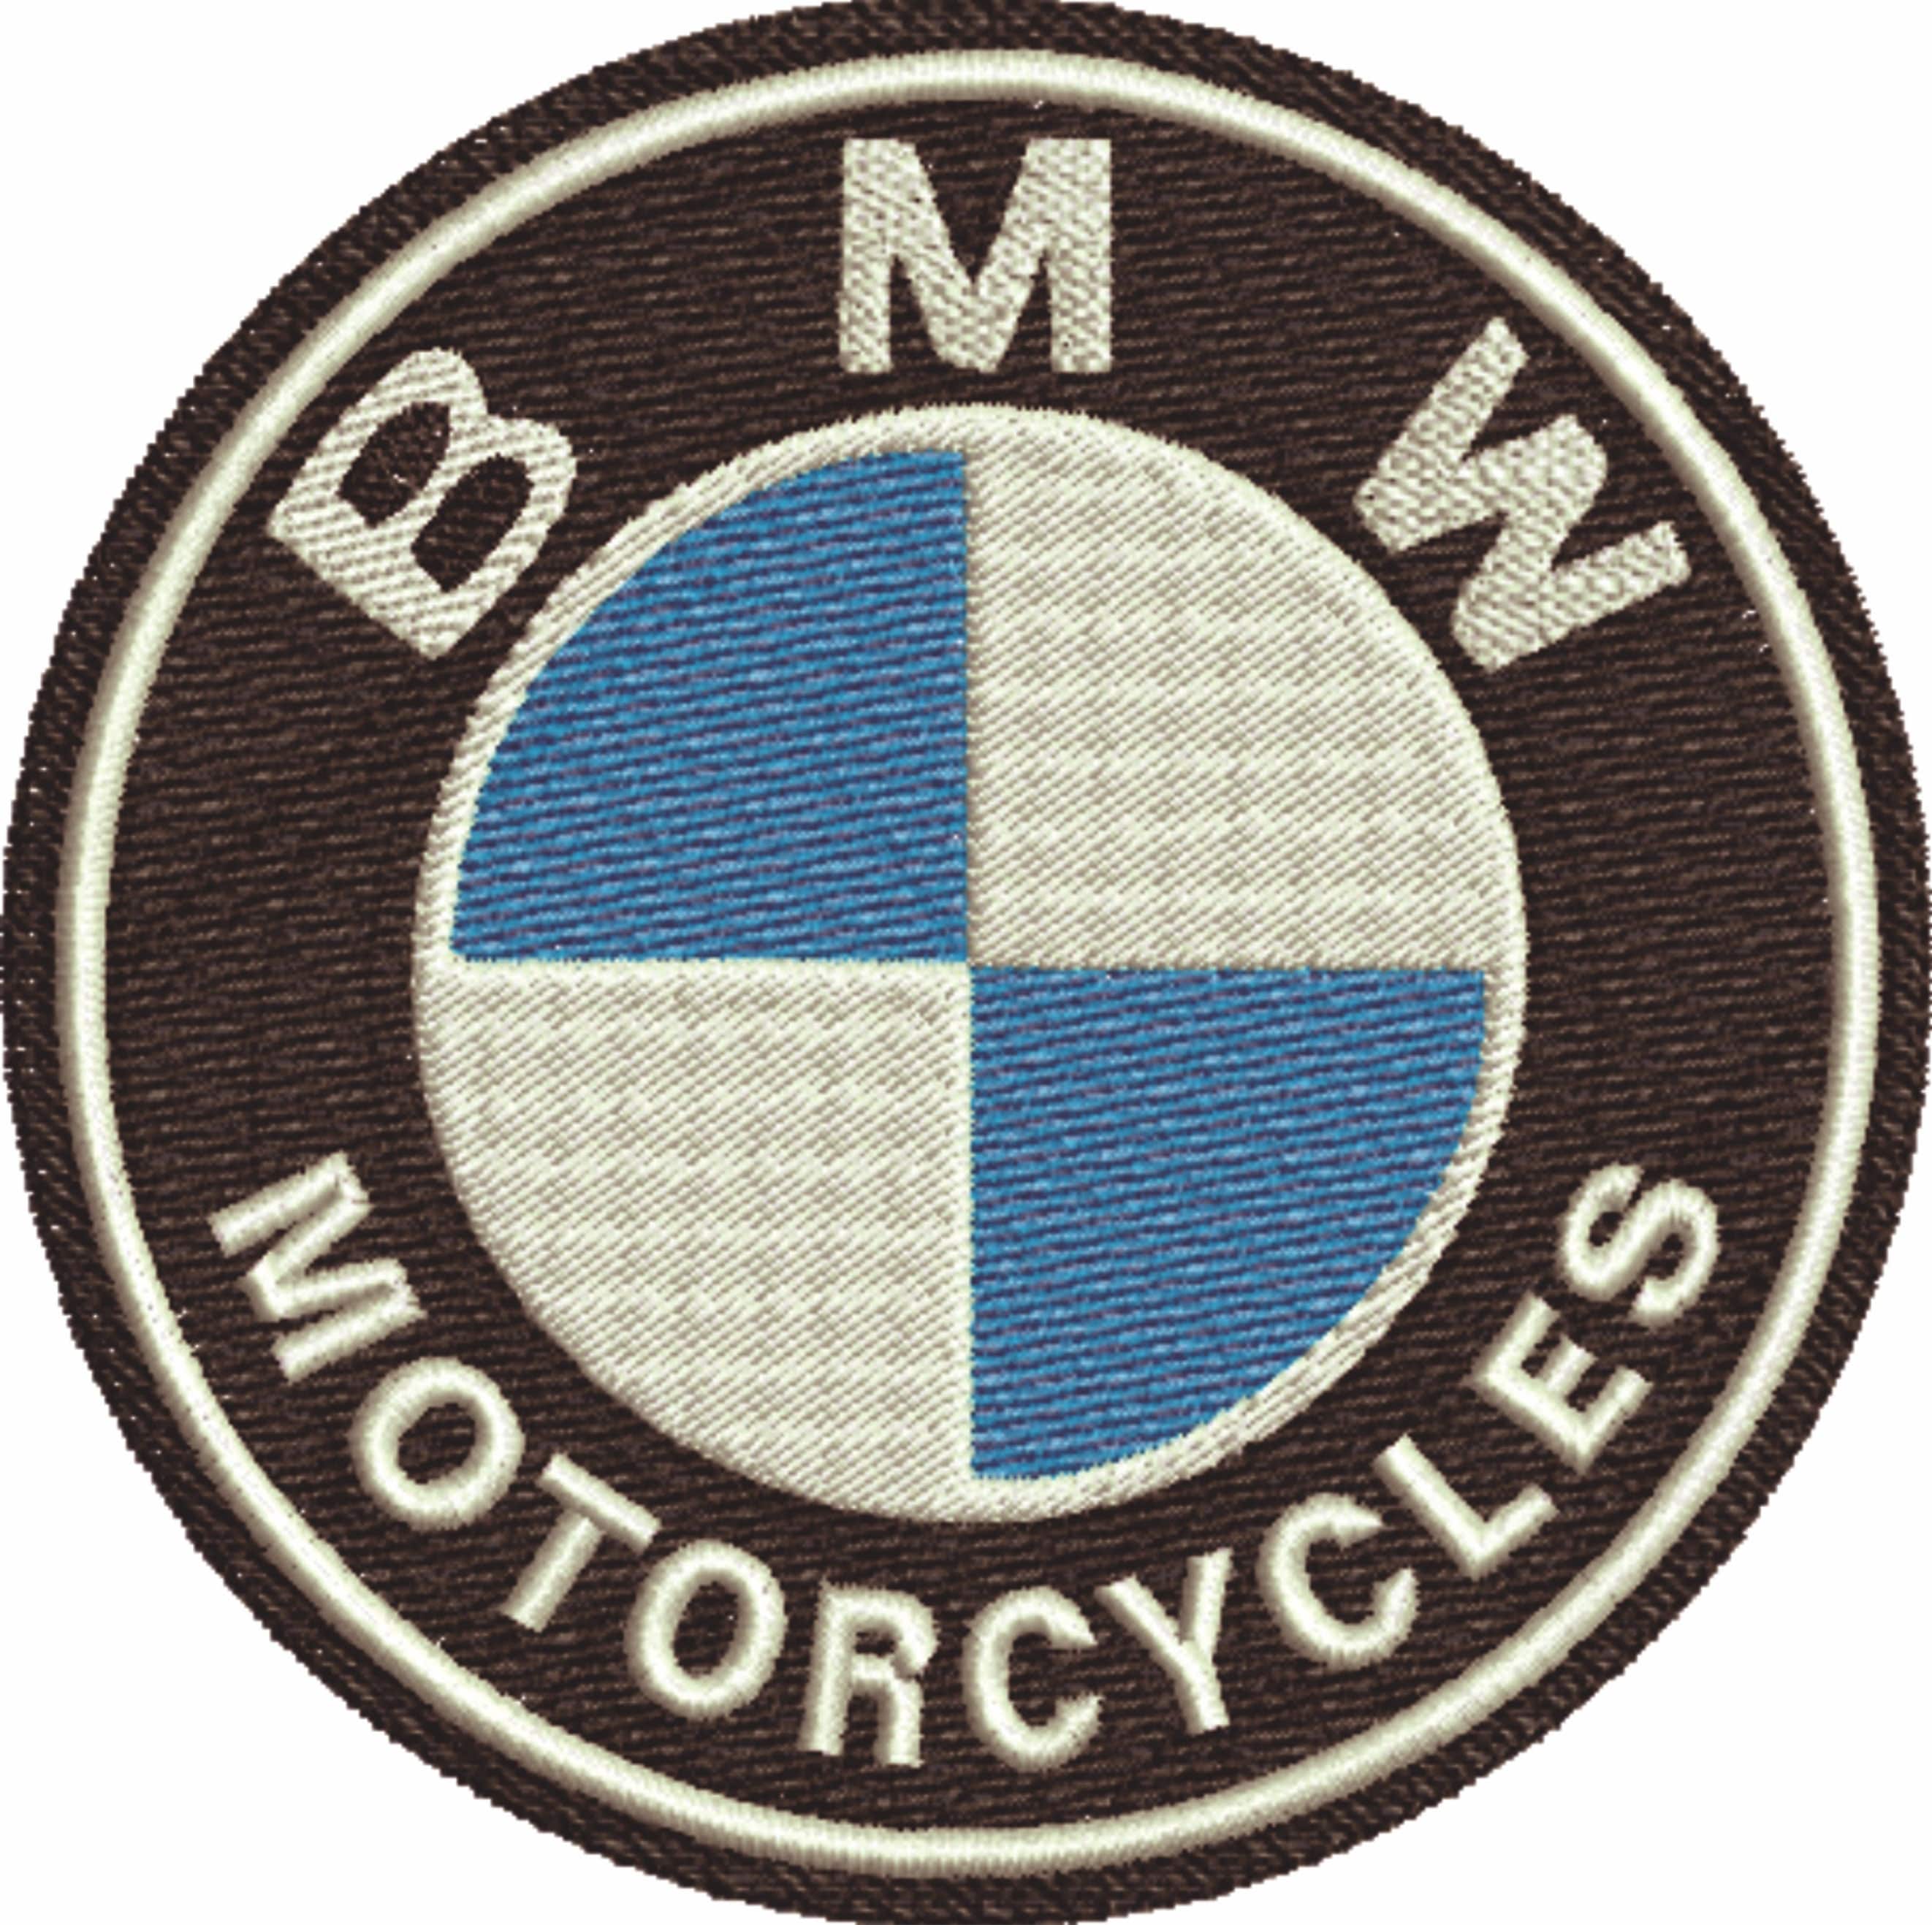 BMW-Logo-Torte Archive - 